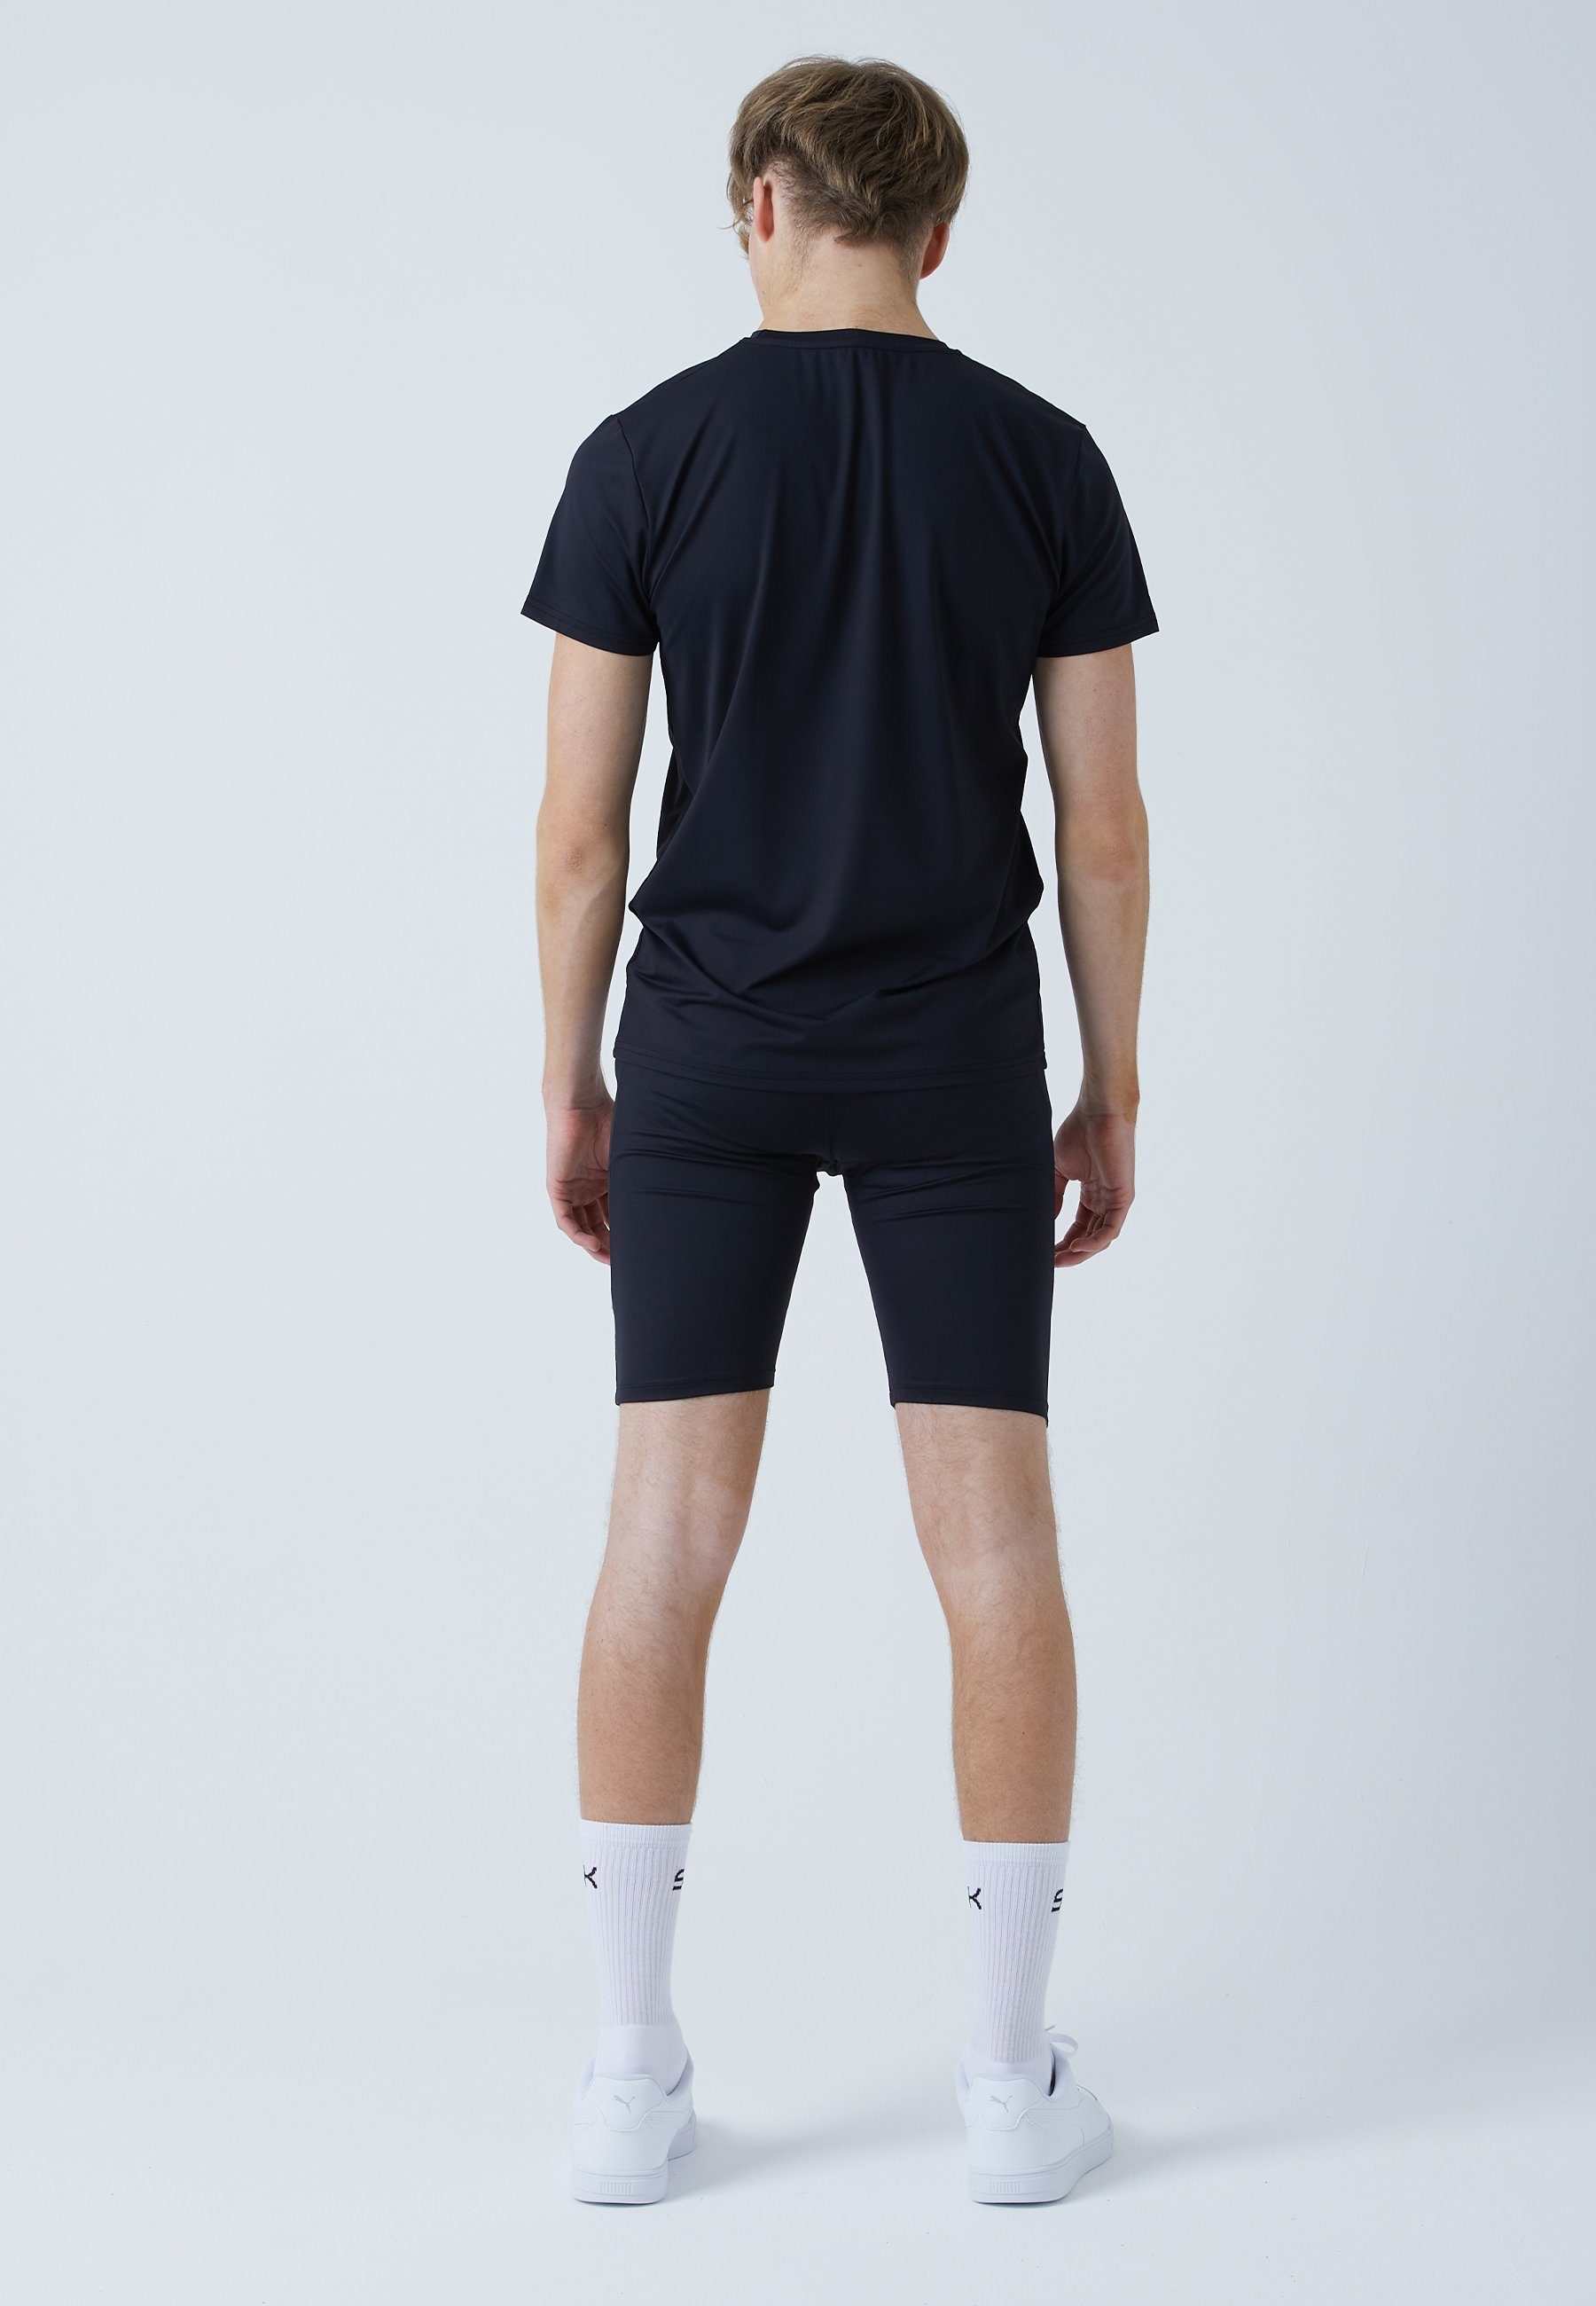 Tennis Radlerhose & Herren schwarz Jungen SPORTKIND Funktionsshorts mit Short Taschen Tights